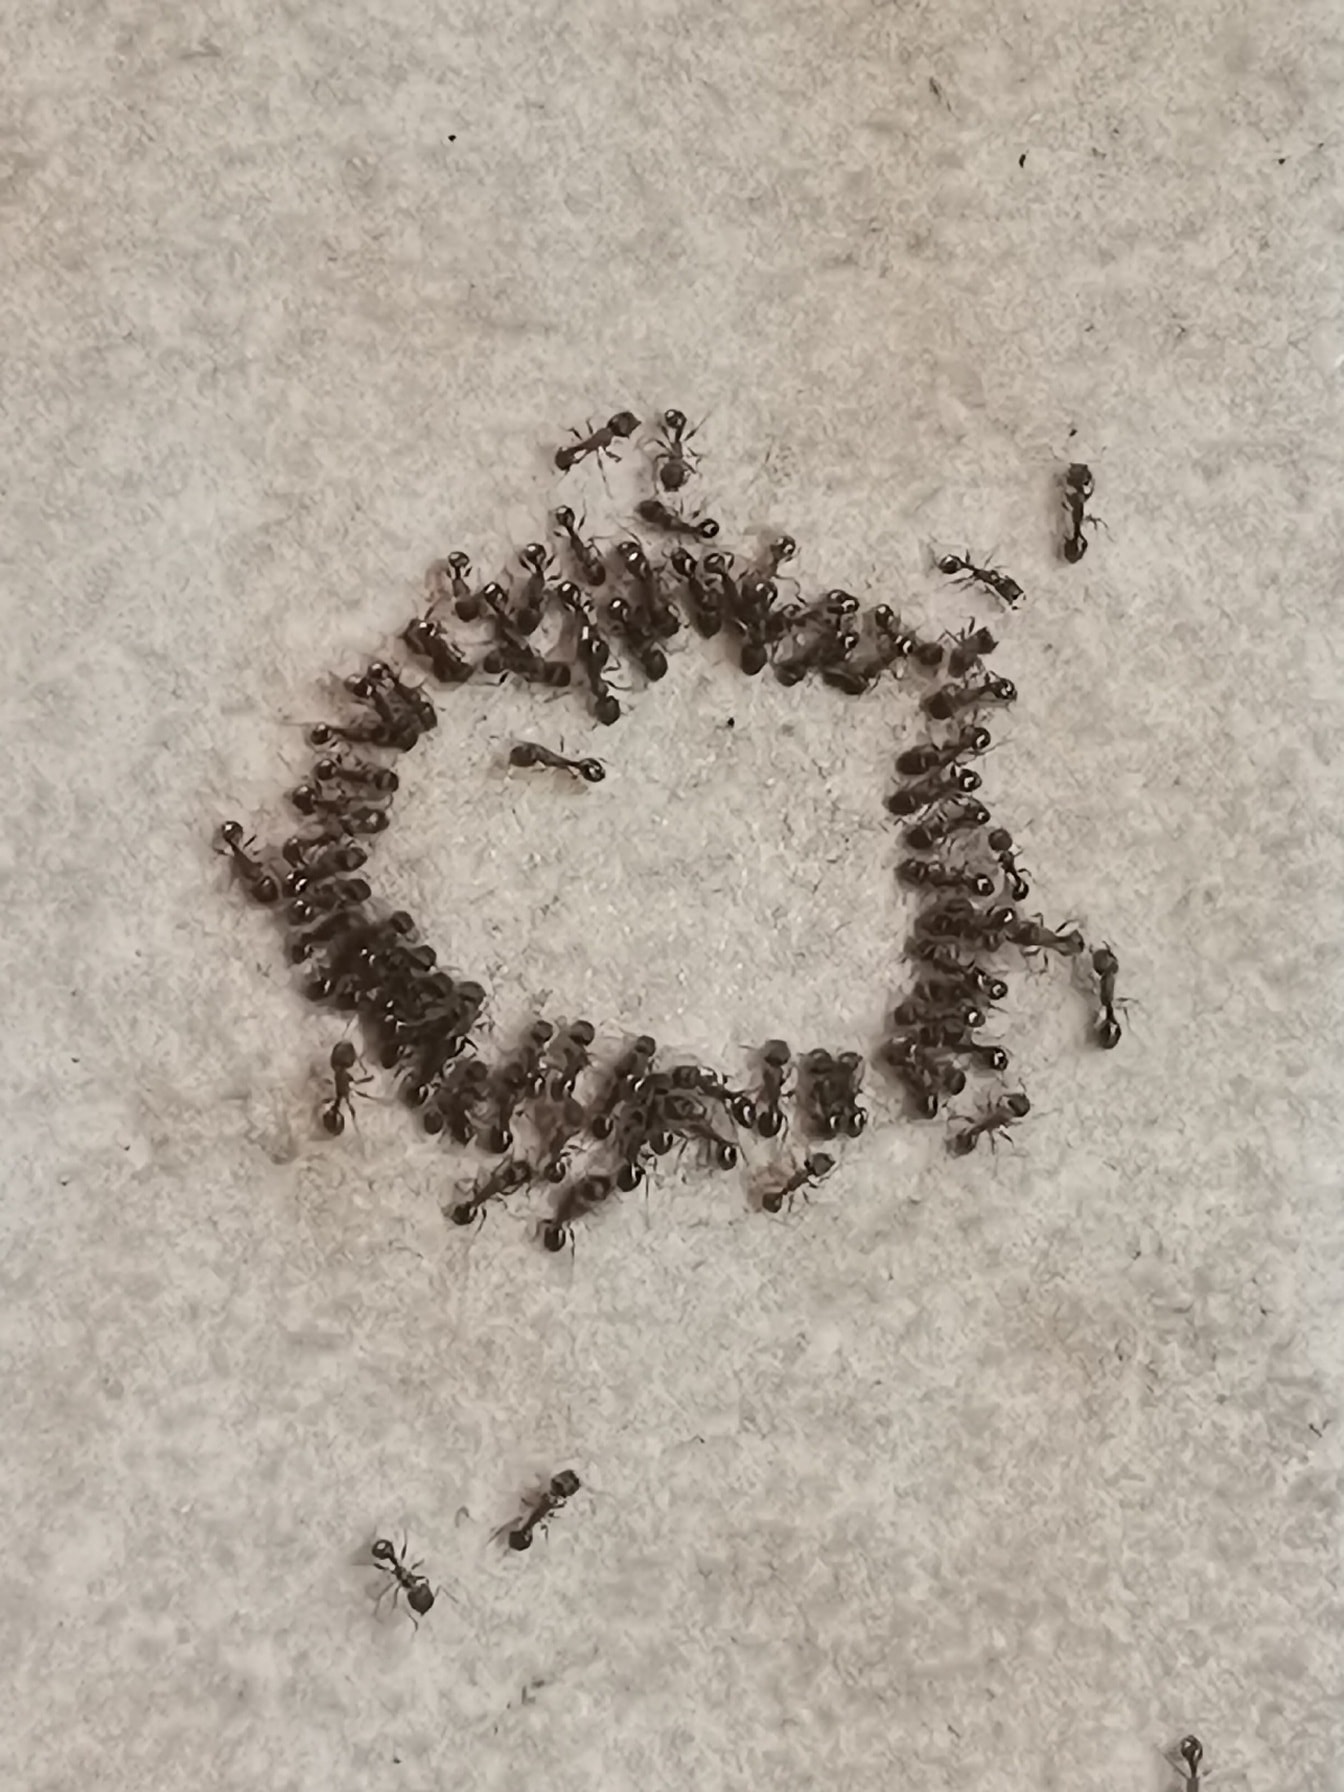 Muitos insetos formigas pretas agrupando close-up